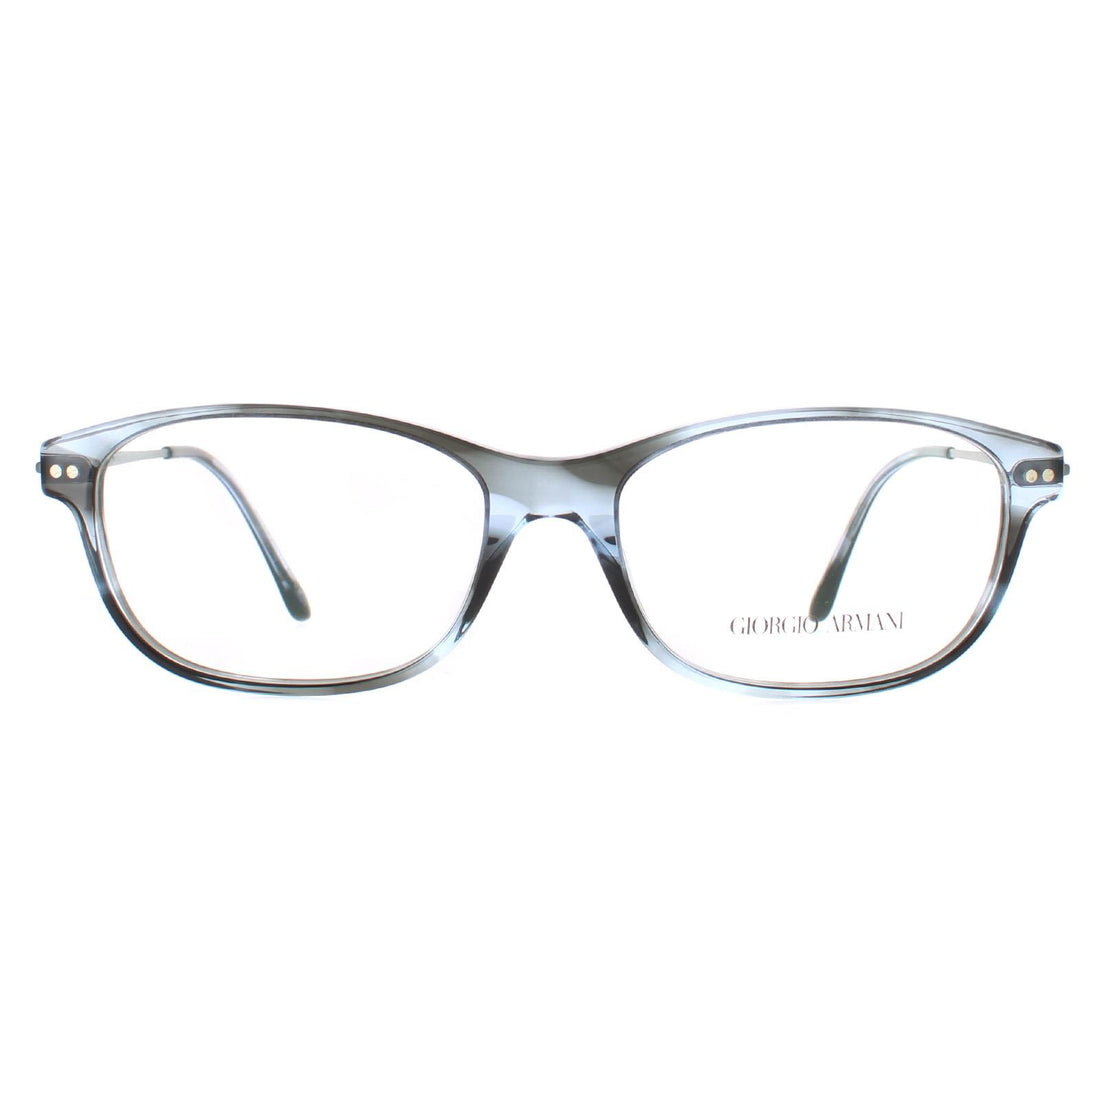 Giorgio Armani AR7007 Glasses Frames Light Blue Grey